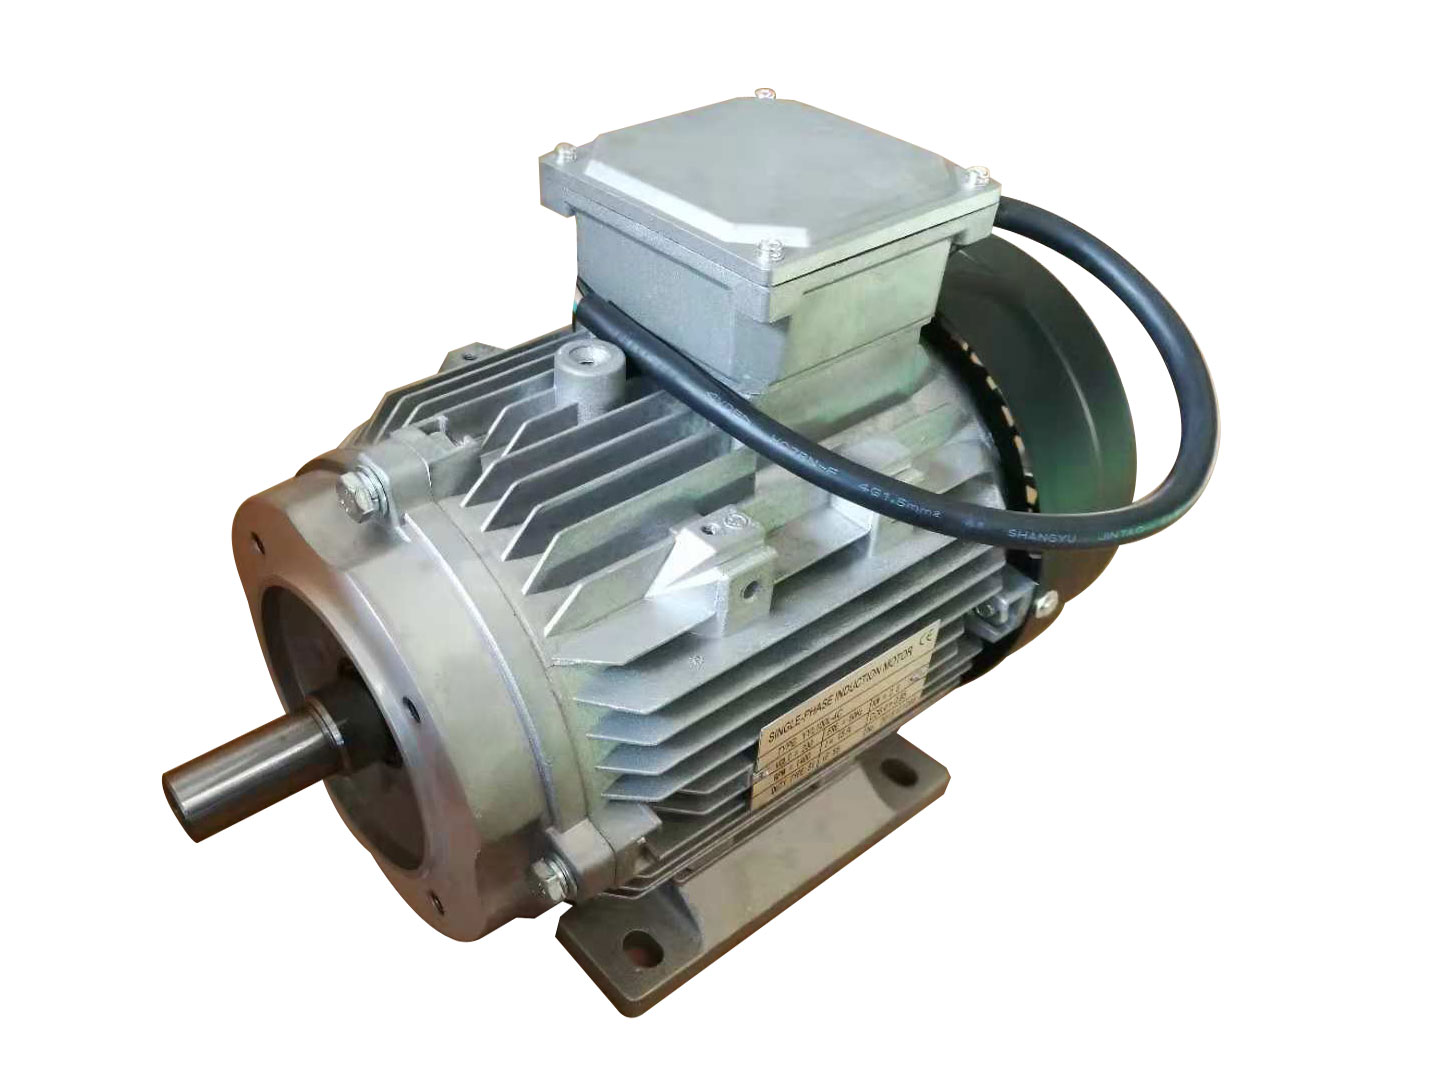 30 KW Pressure Washer Motor